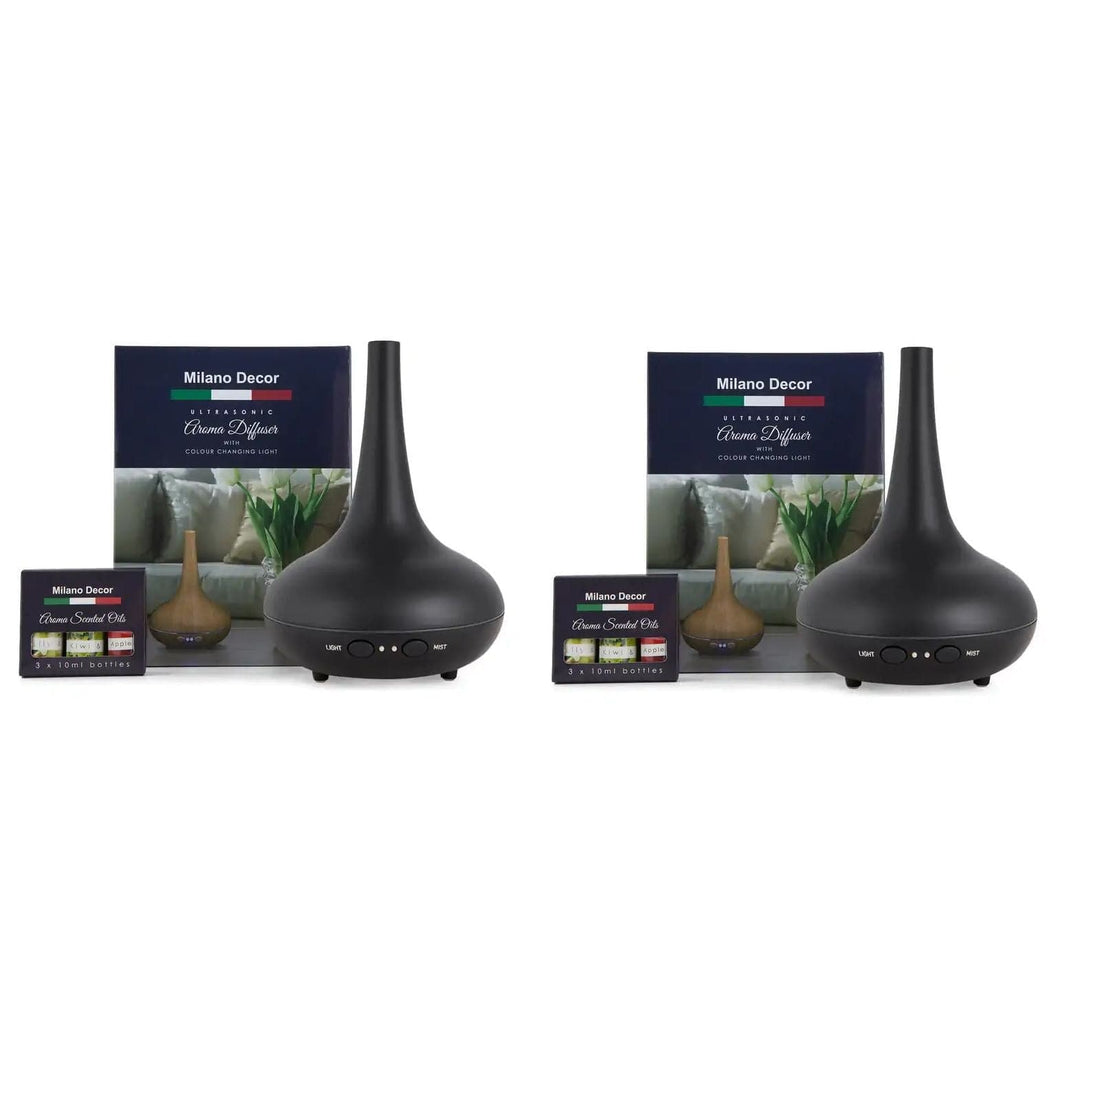 2 x Milano Decor Ultrasonic Aroma Diffusers Humidifier + 6 Diffuser Oils Set-Home Fragrances-PEROZ Accessories